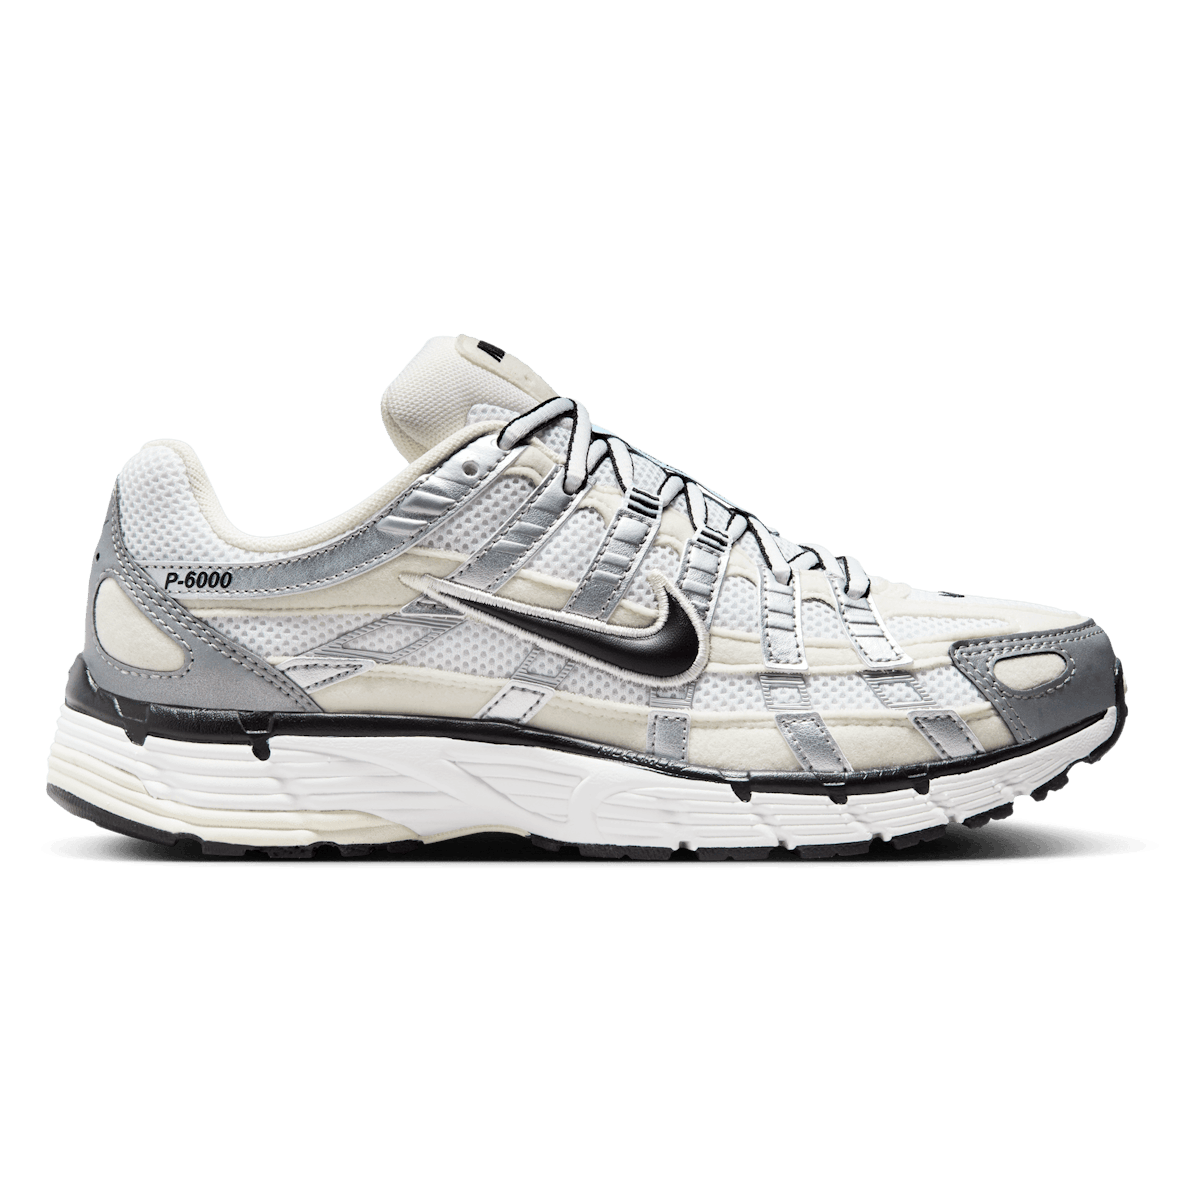 Nike P-6000 "Metallic Silver"